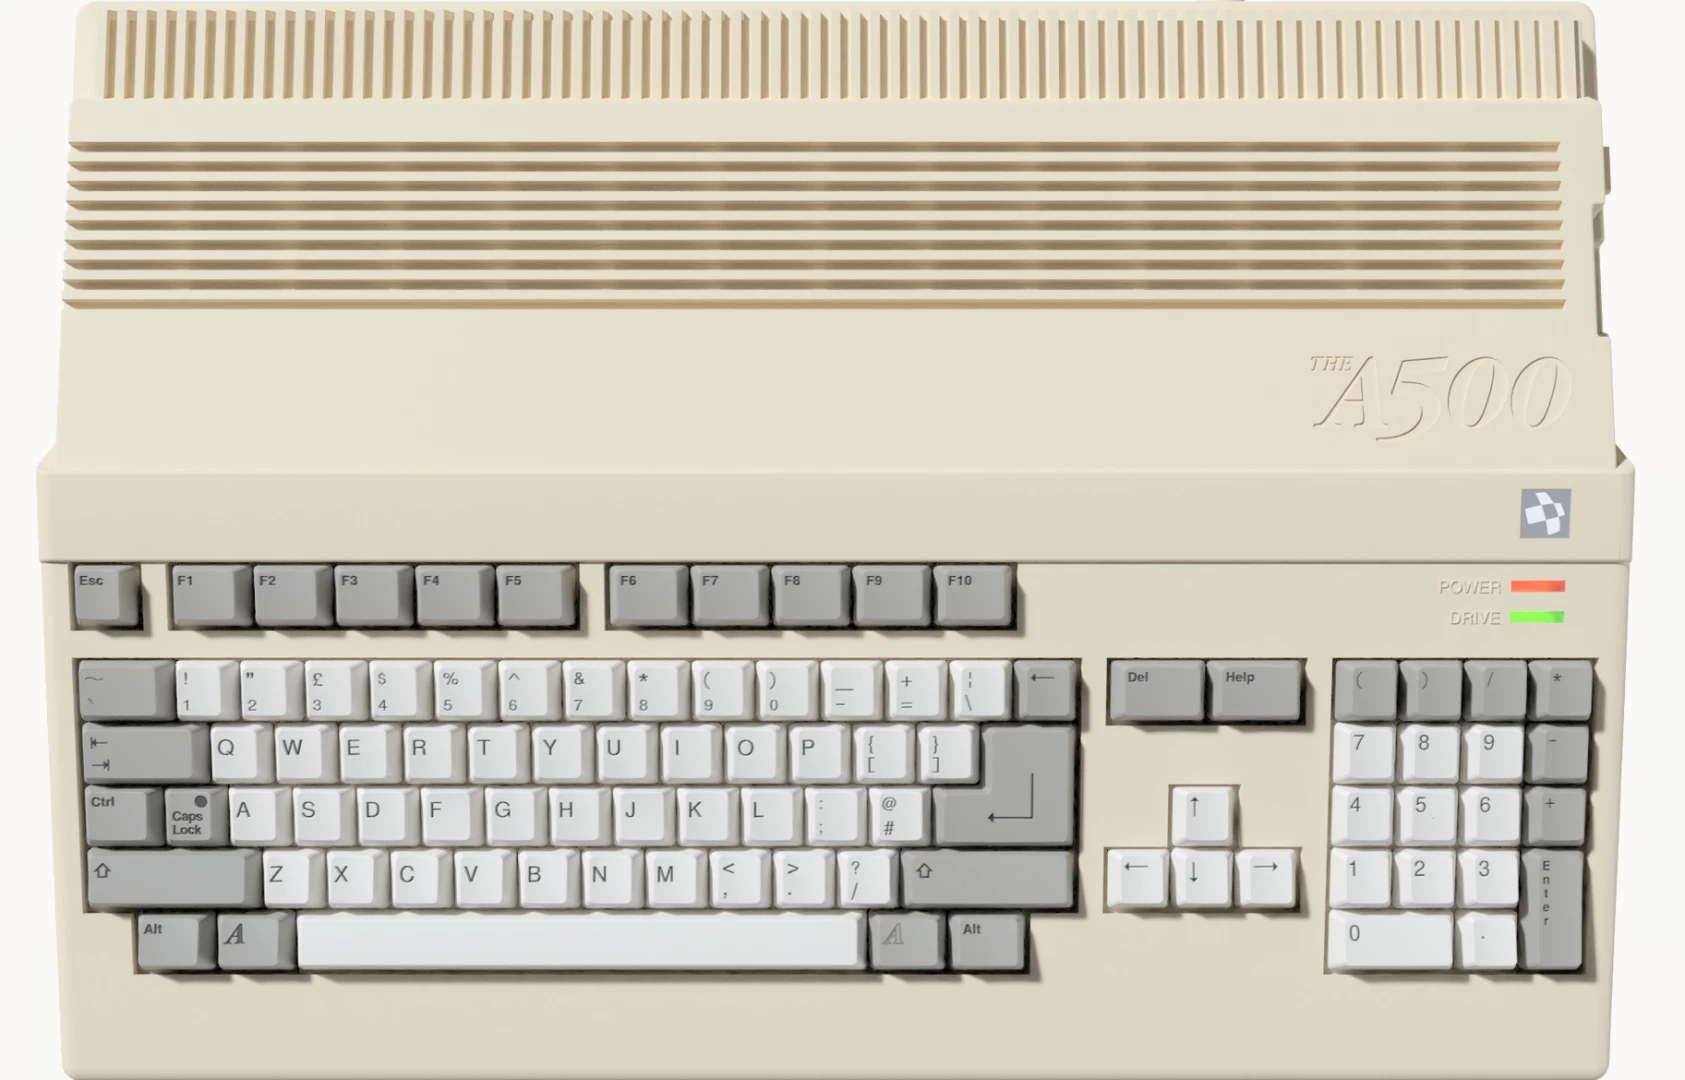 A500 Mini (Amiga) voor de TV Games preorder plaatsen op nedgame.nl